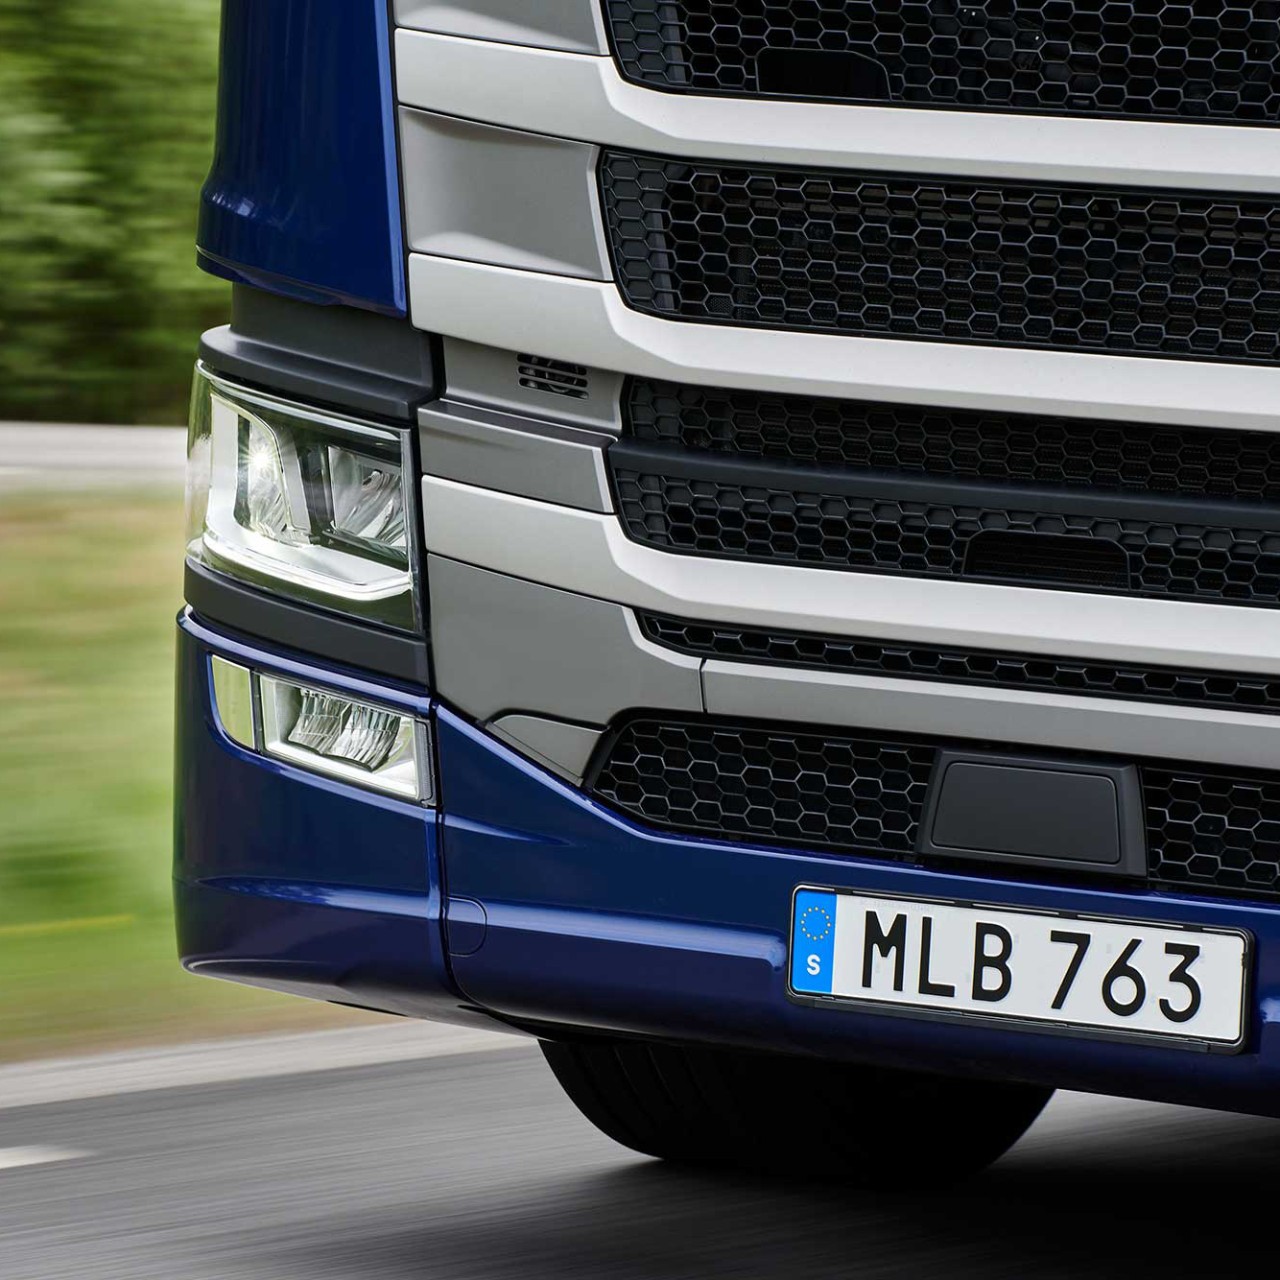 Scania introducerar uppdaterade lastbilar i november